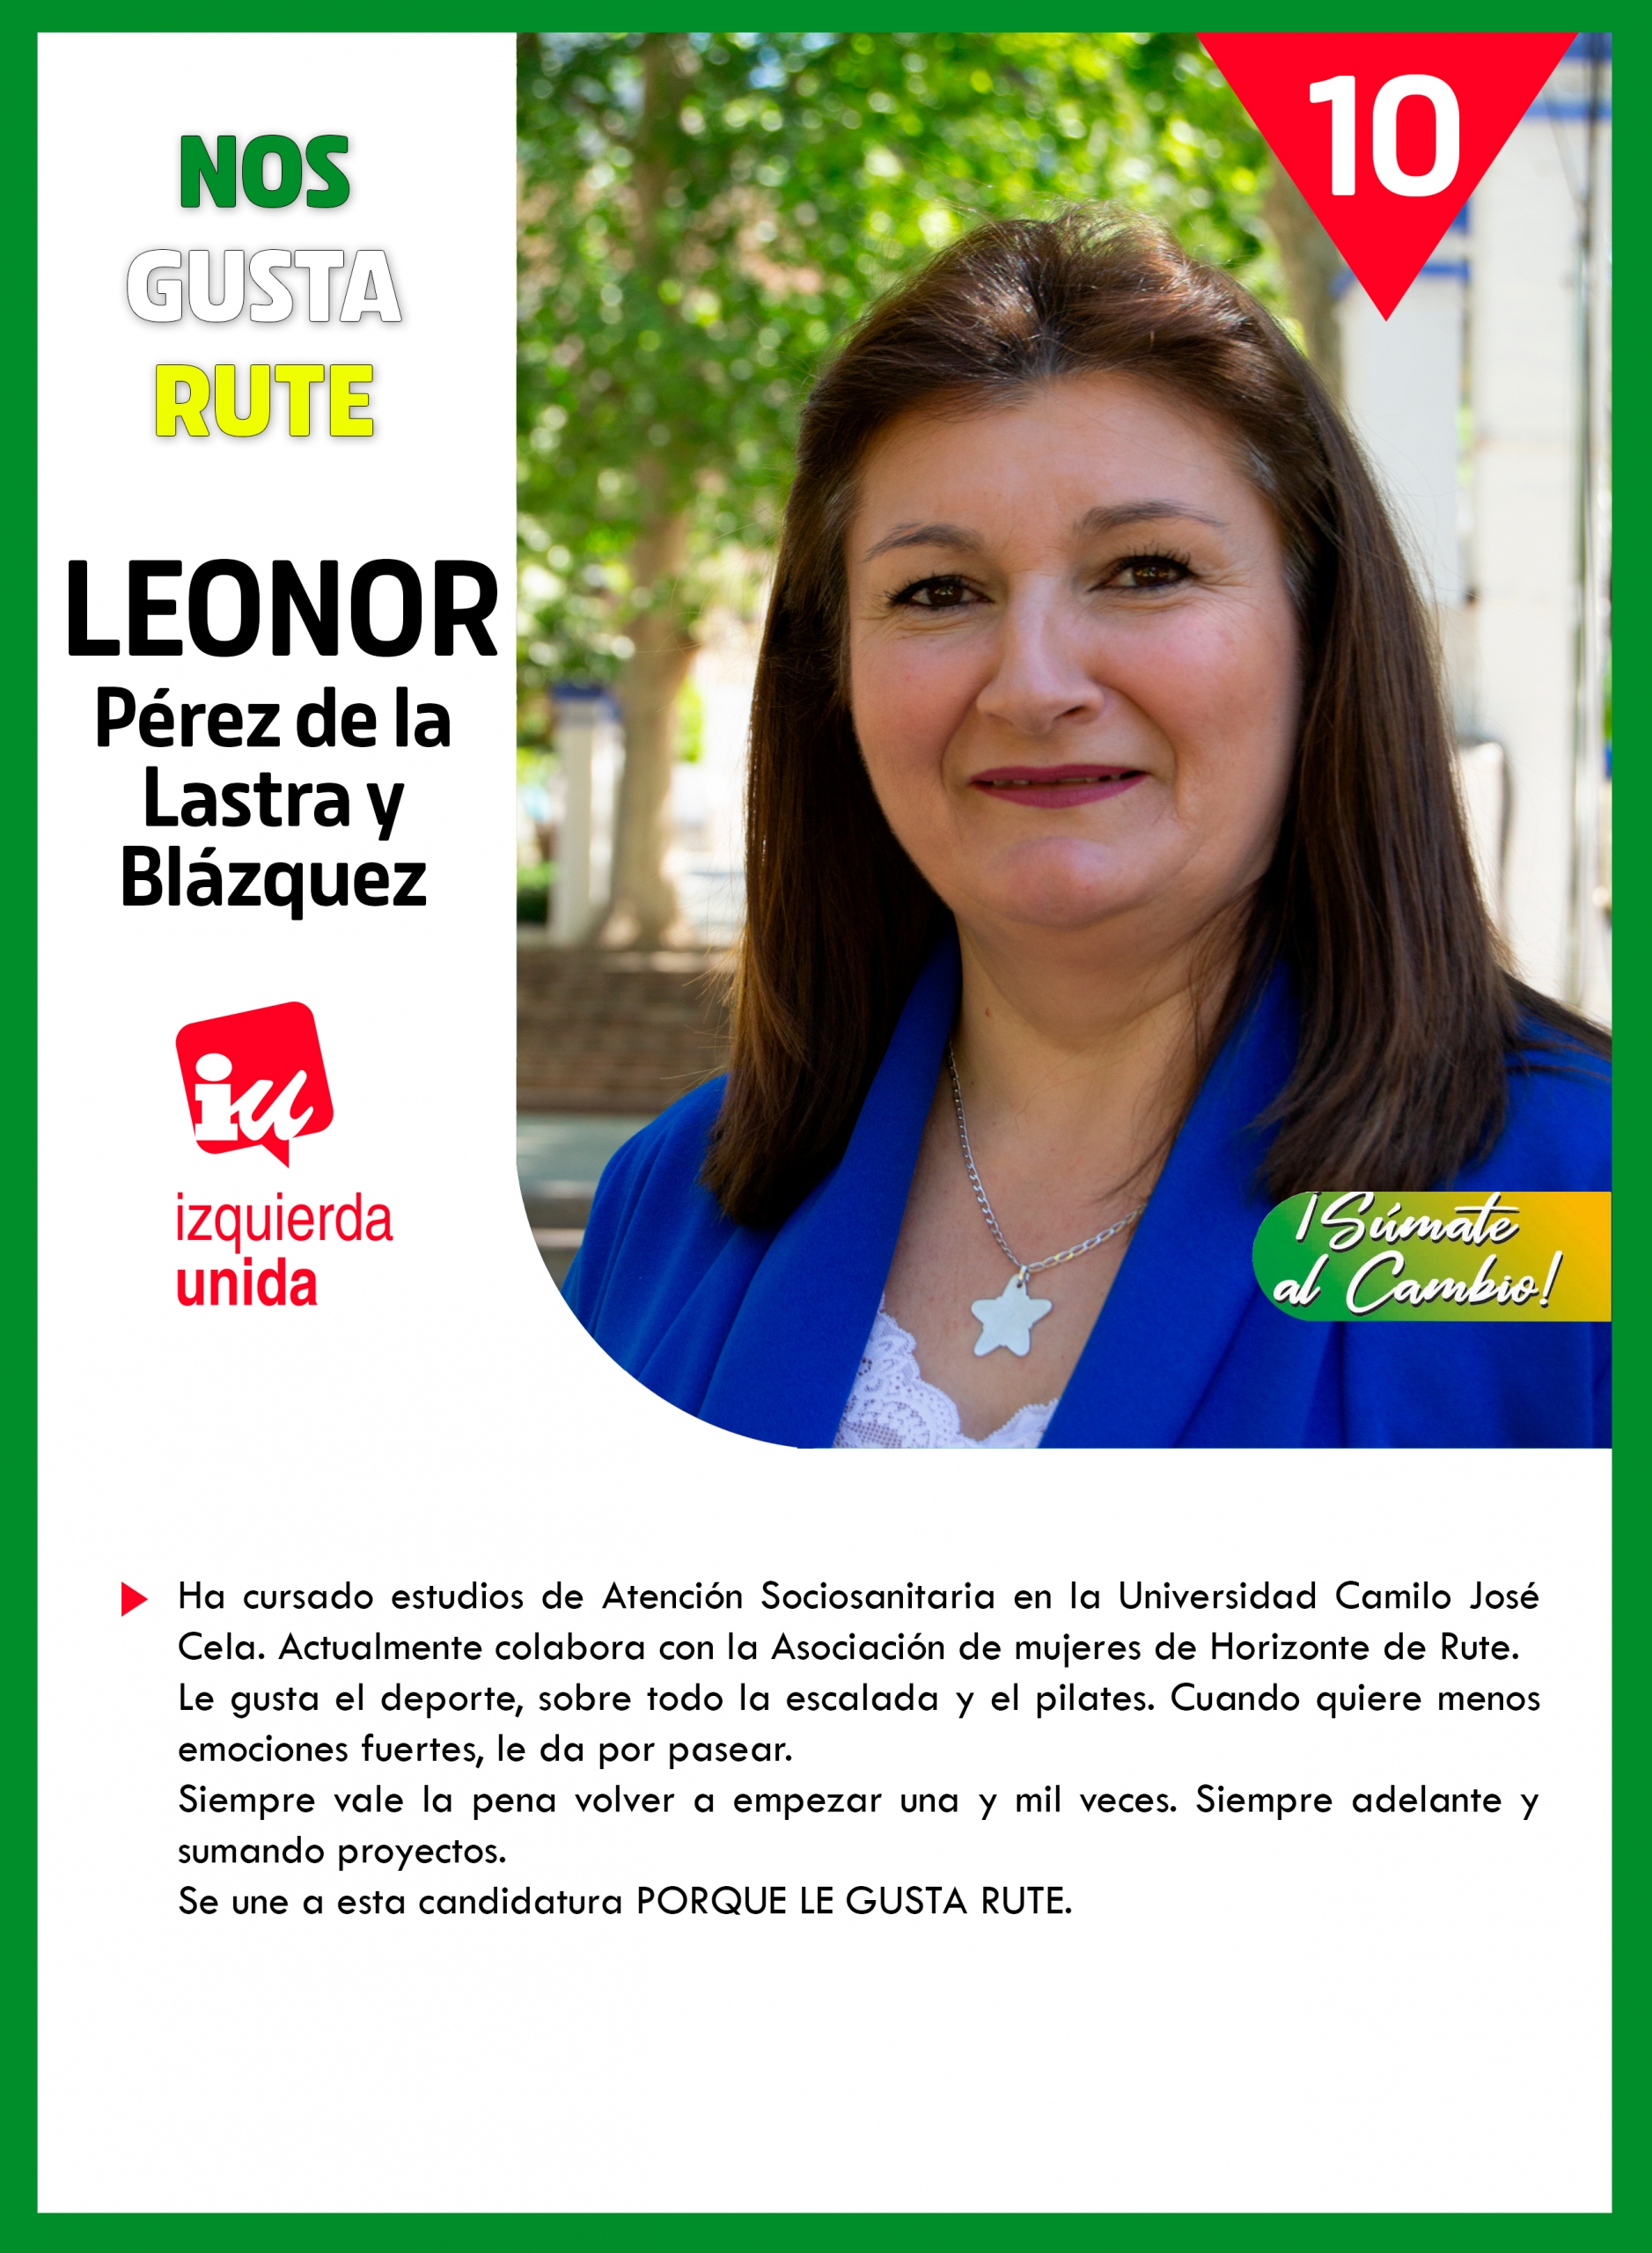 Leonor Pérez de la Lastra y Blázquez